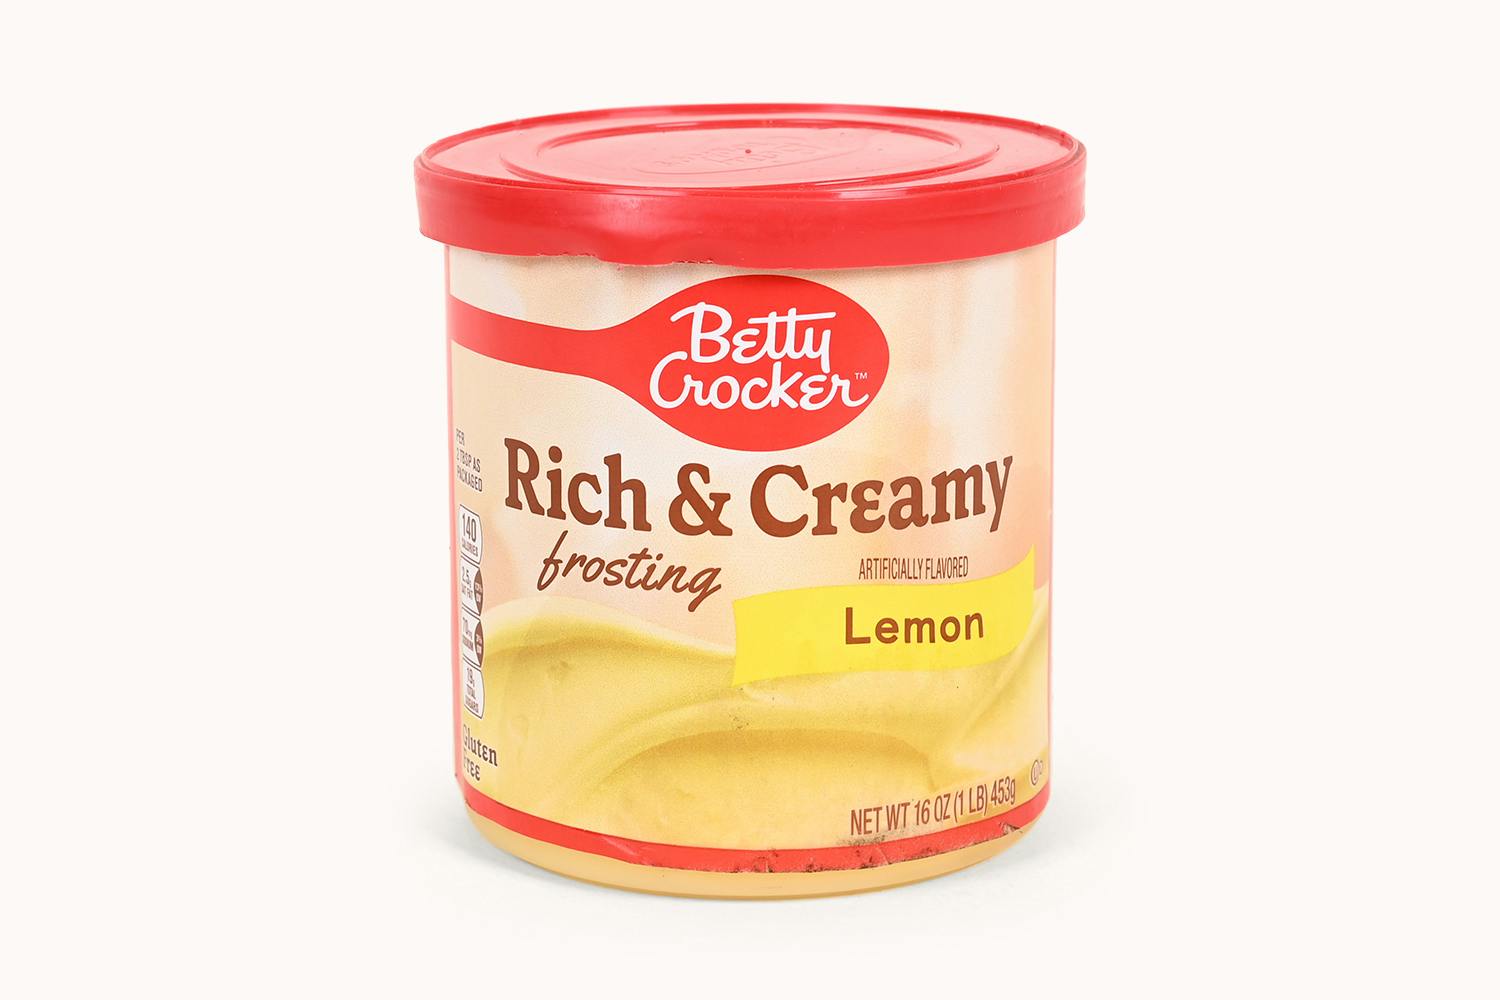 Betty Crocker Rich & Creamy Frosting Lemon